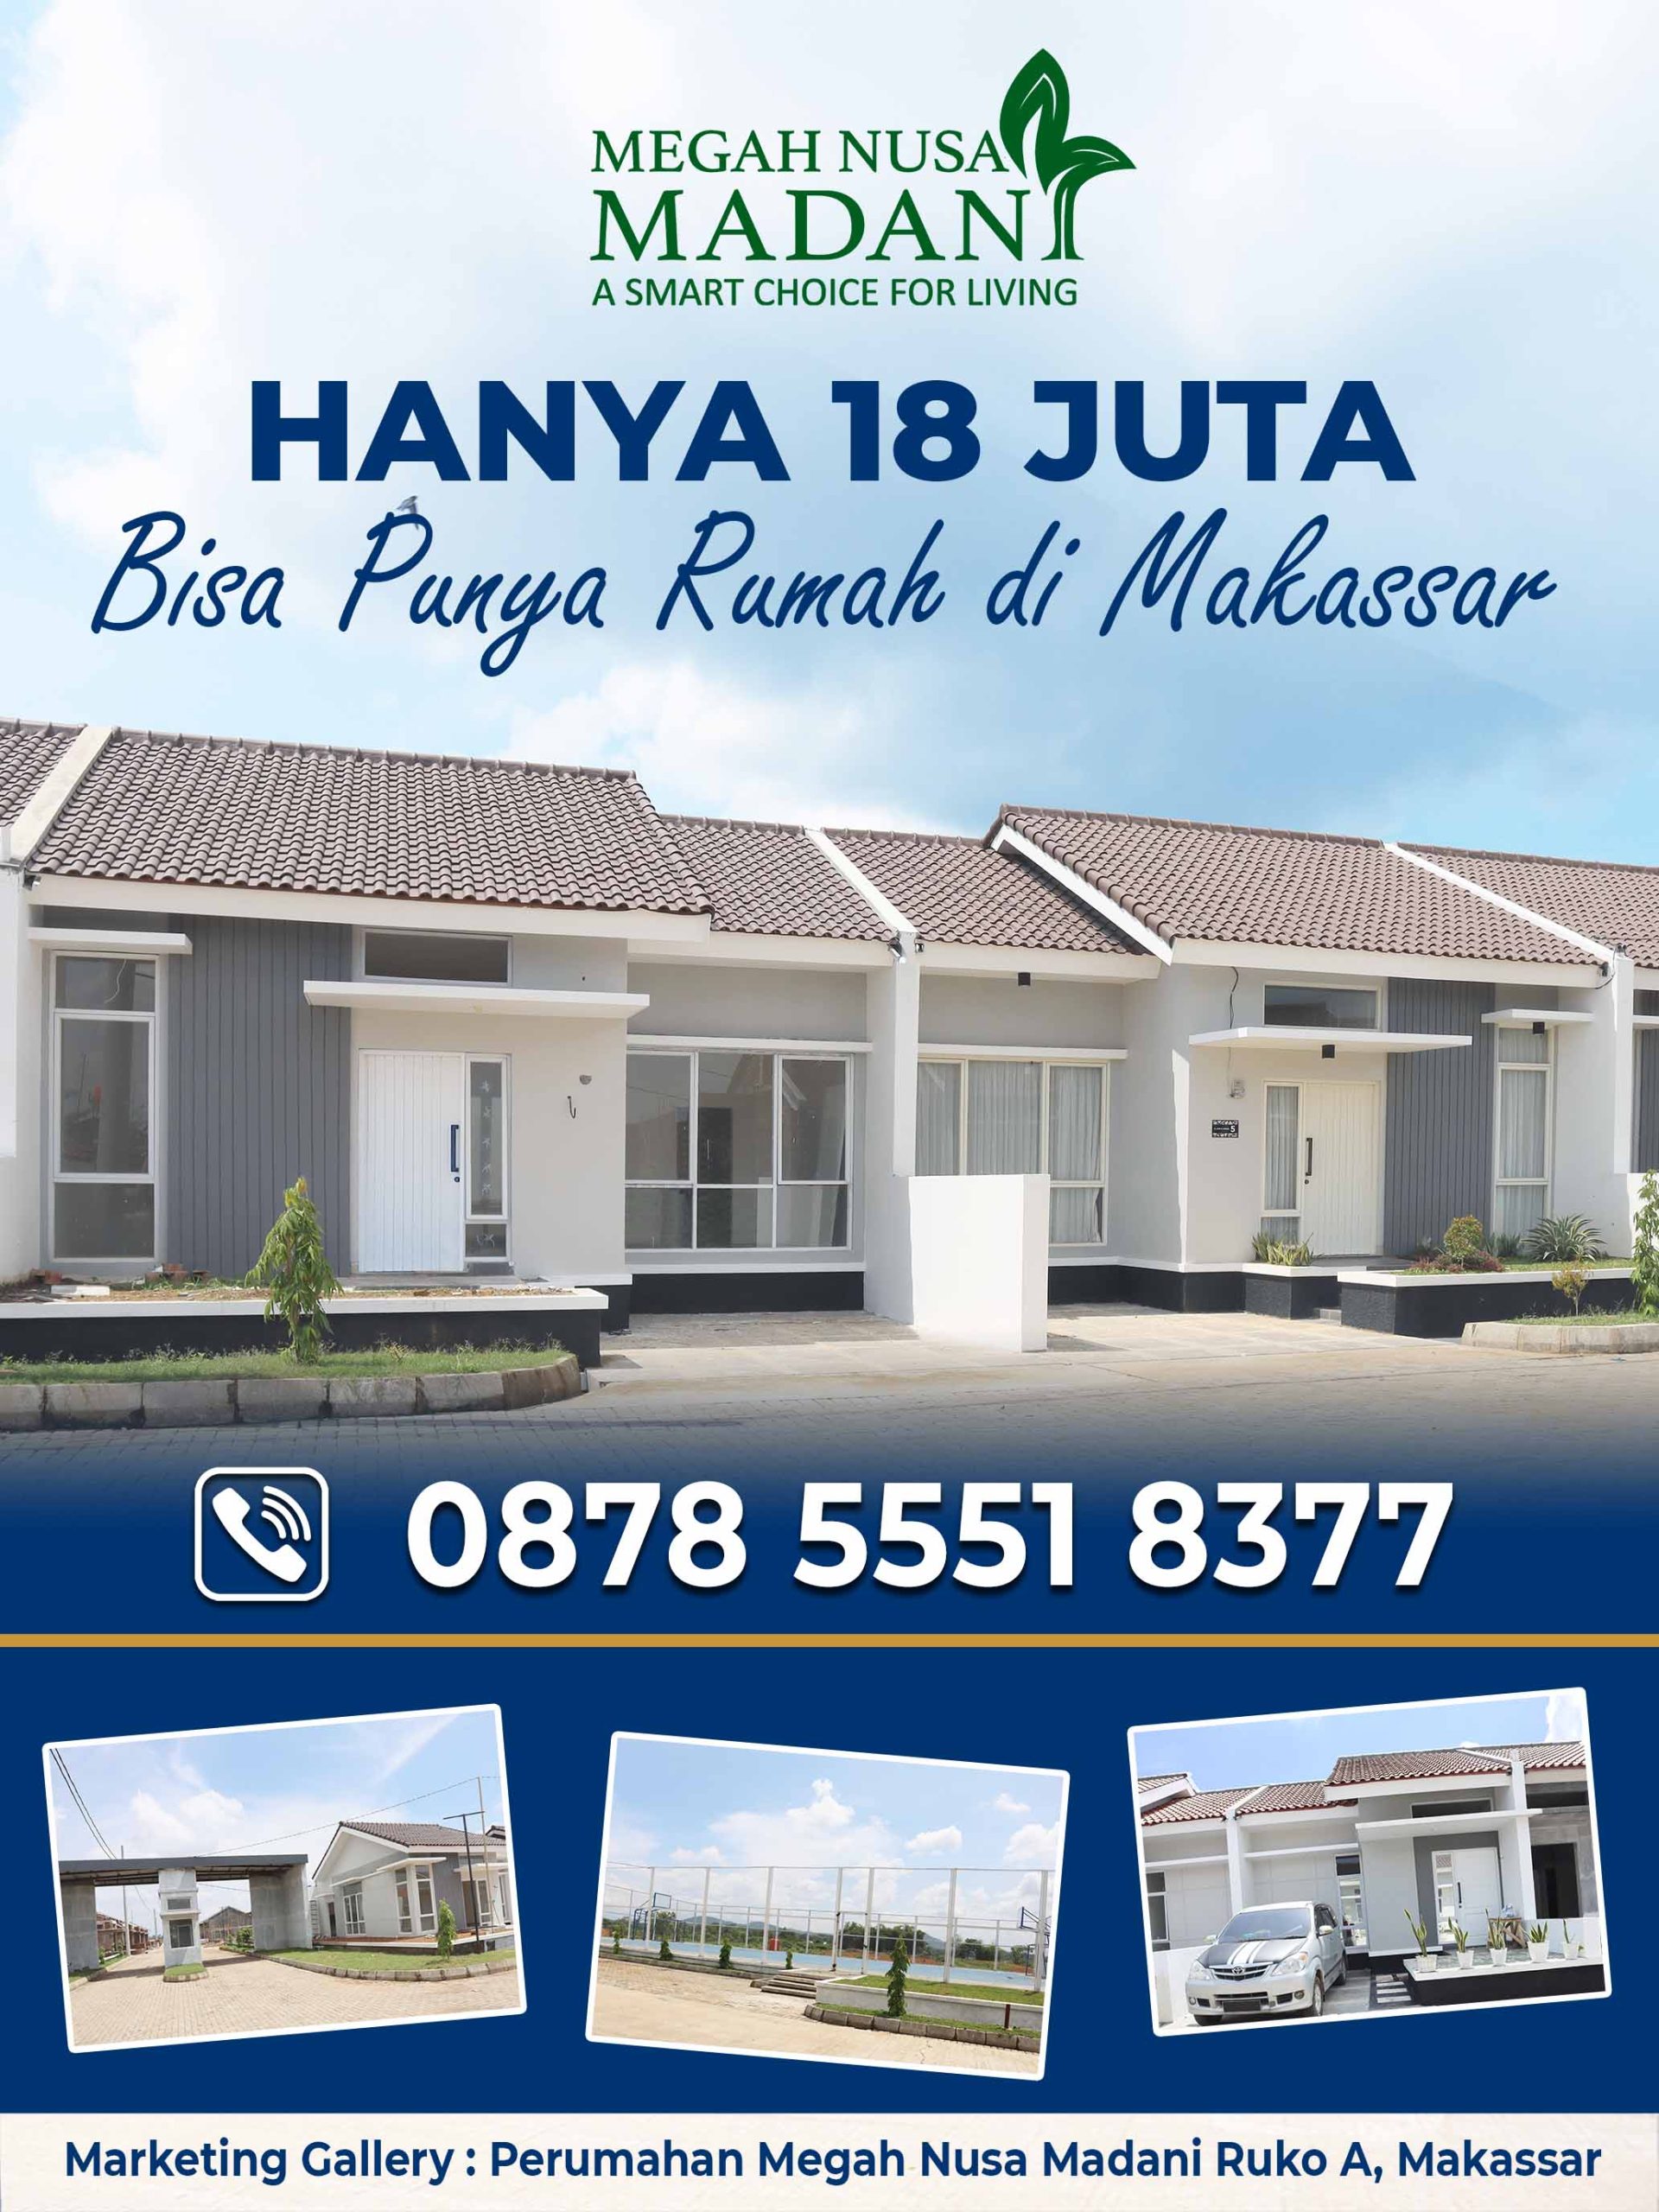 Hanya 18 juta bisa punya rumah di Makassar. Hubungi 087855518377.